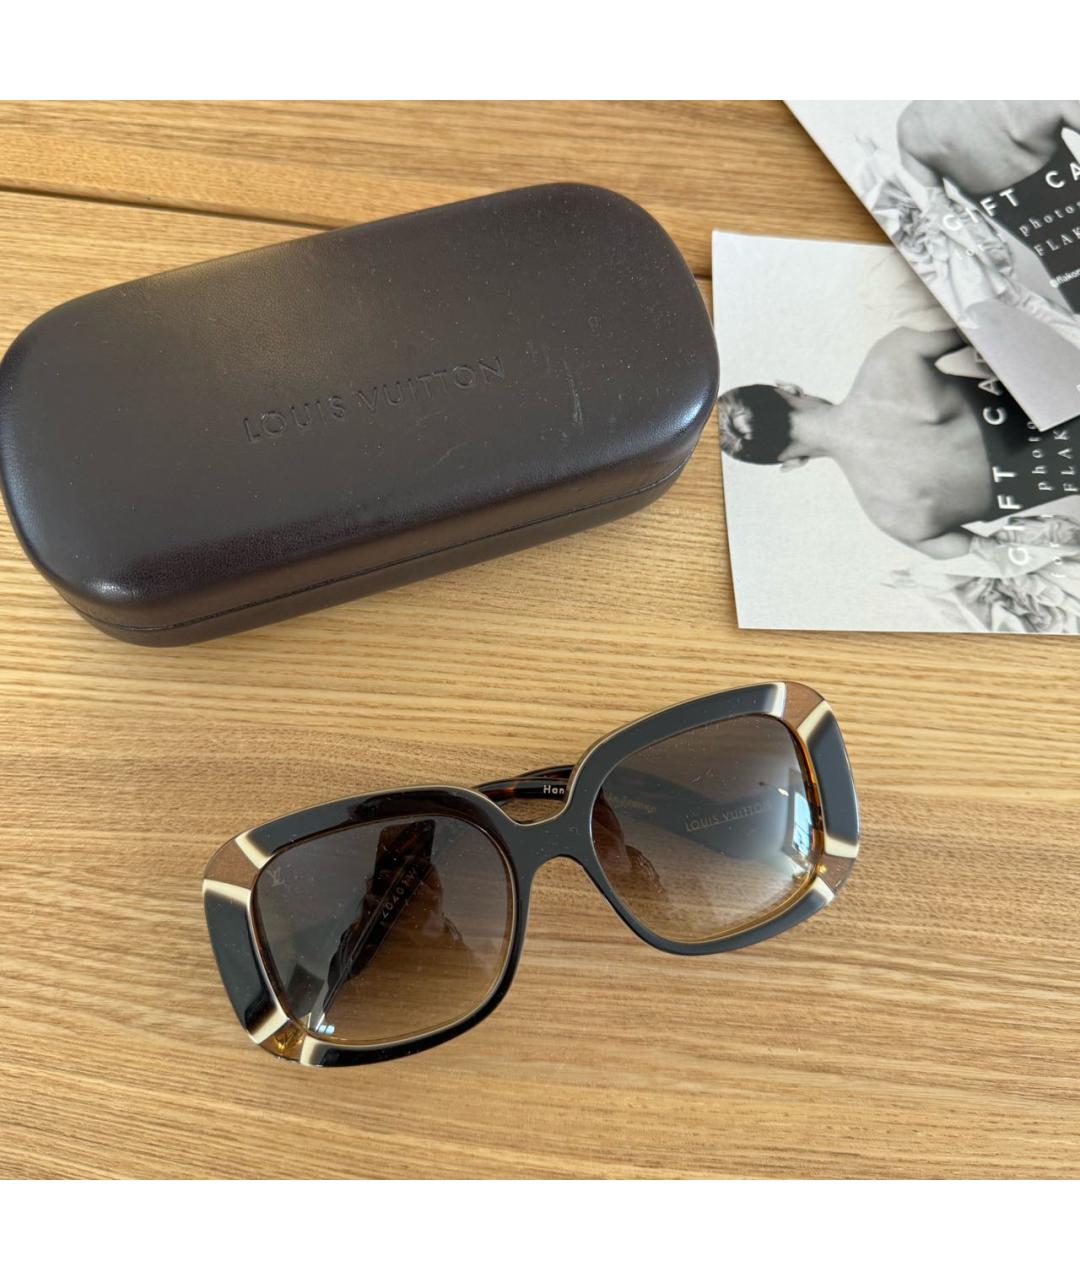 LOUIS VUITTON PRE-OWNED Коричневые пластиковые солнцезащитные очки, фото 8